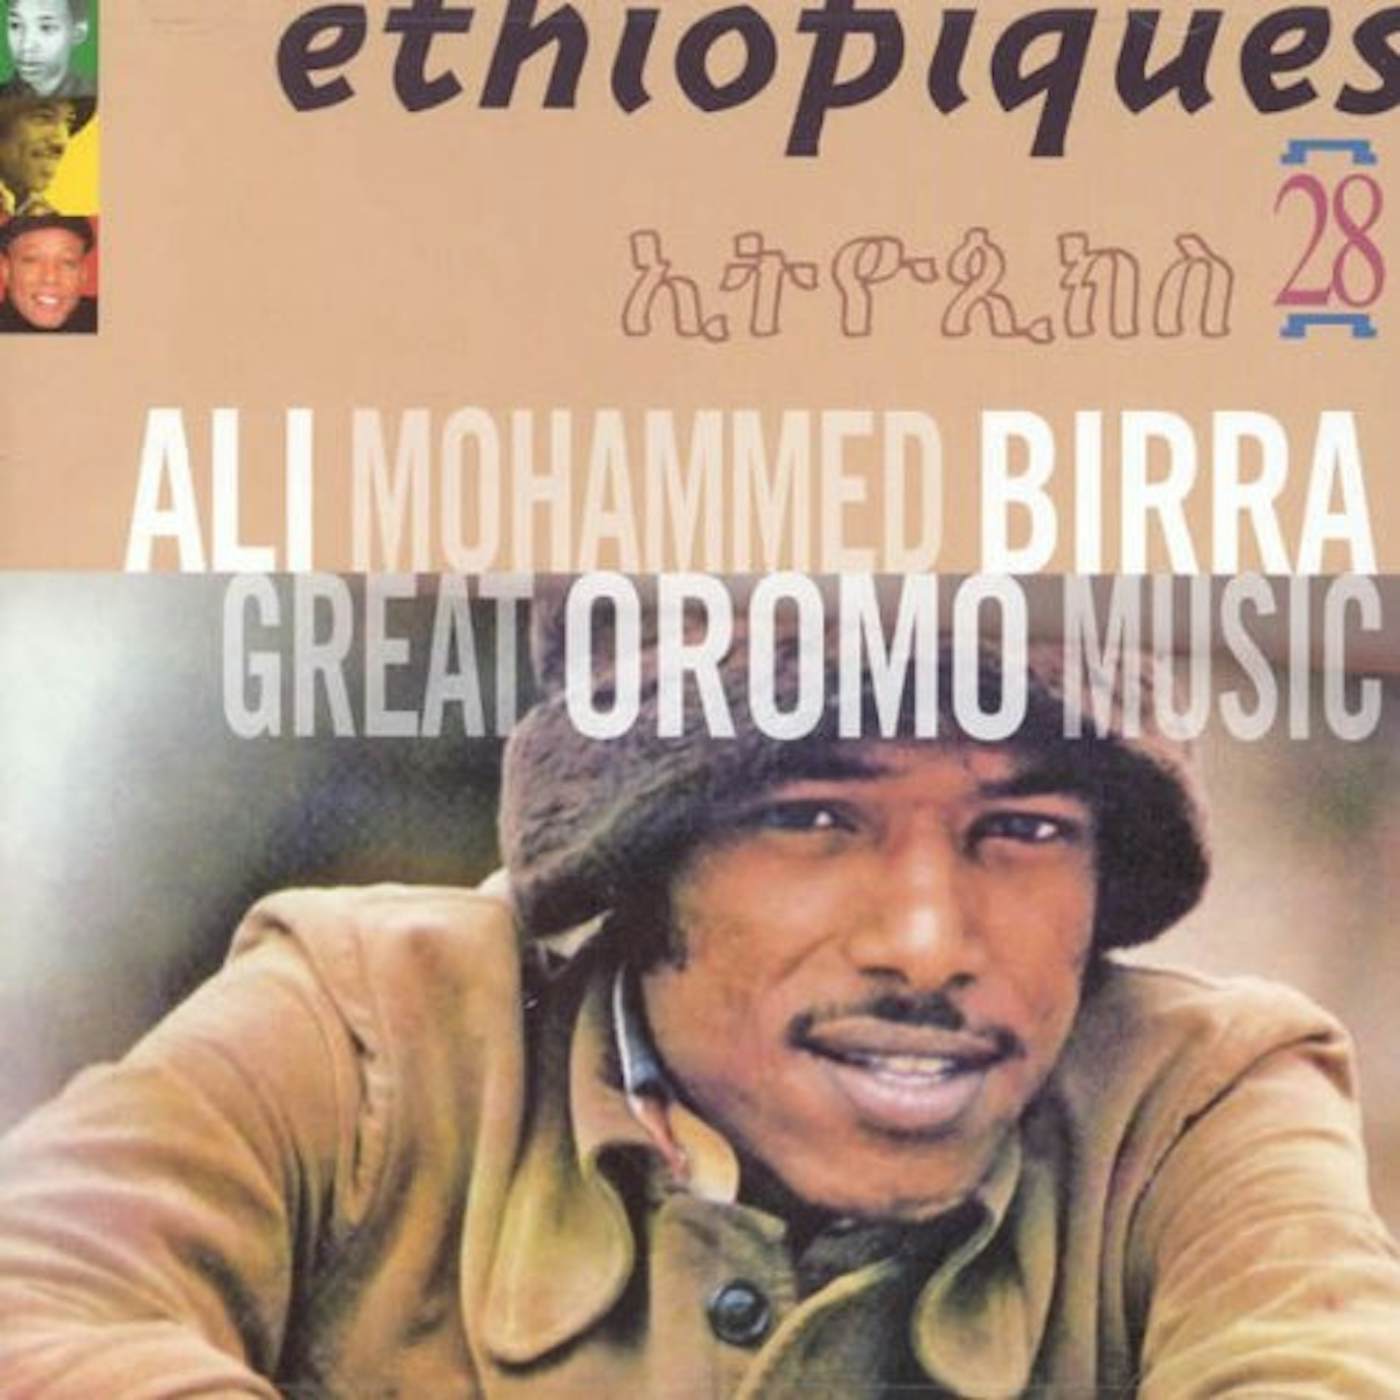 Ali Birra ETHIOPIQUES 28: GREAT OROMO MUSIC CD